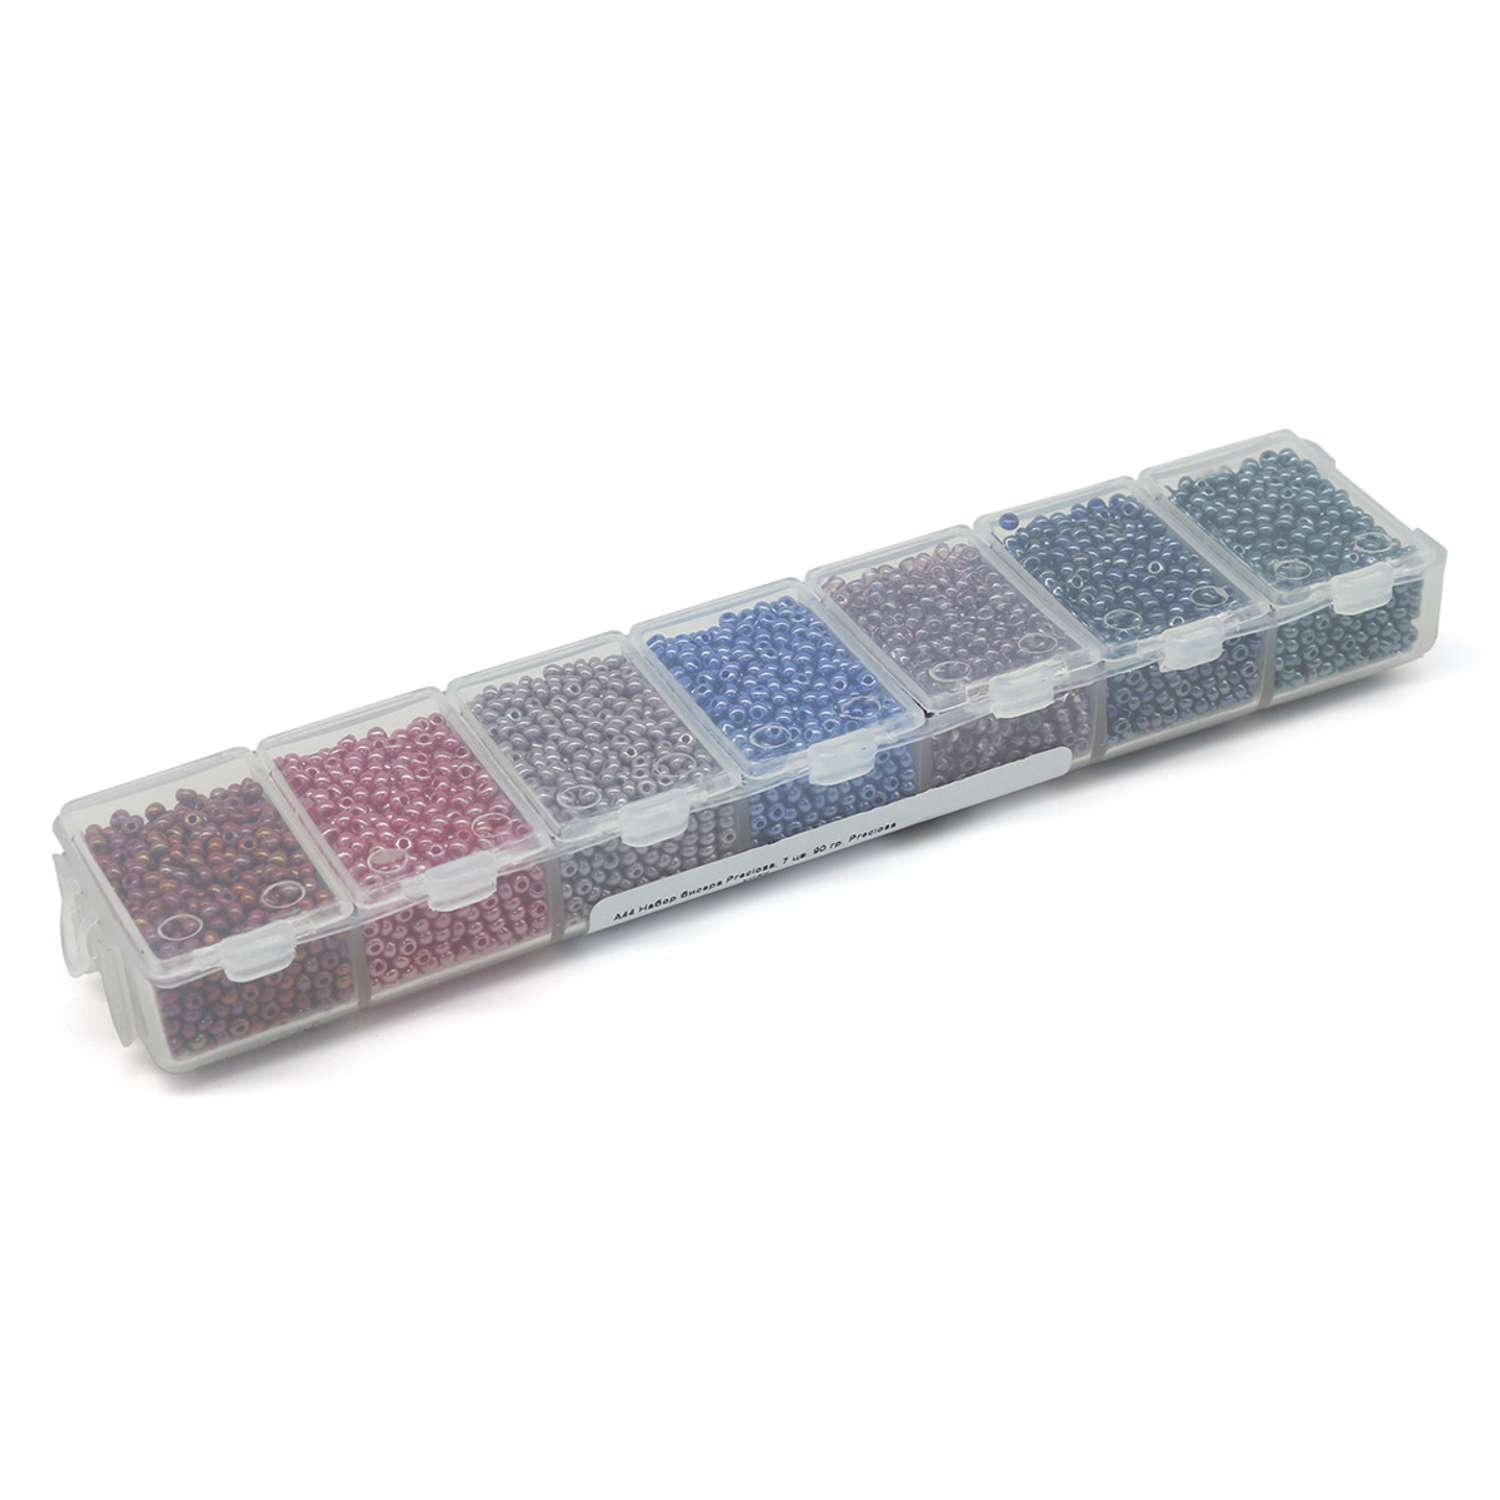 Набор бисера Preciosa с эффектами откалиброванный для вышивки плетения творчества в наборе 7 цветов 90 гр A44 - фото 3